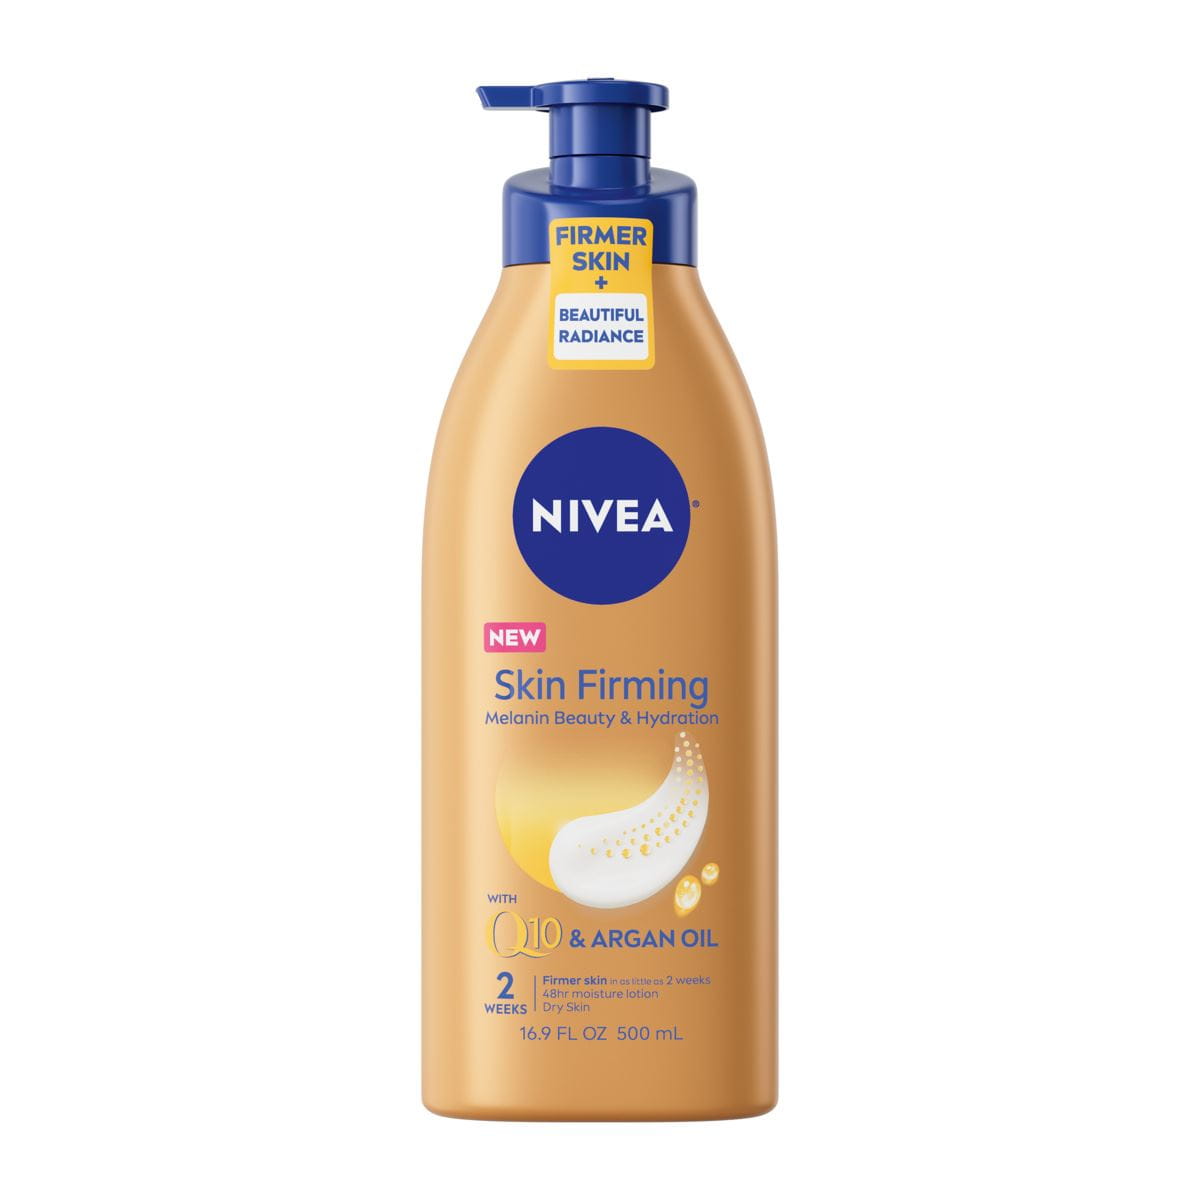 NIVEA Skin Firming Melanin Beauty & Hydration